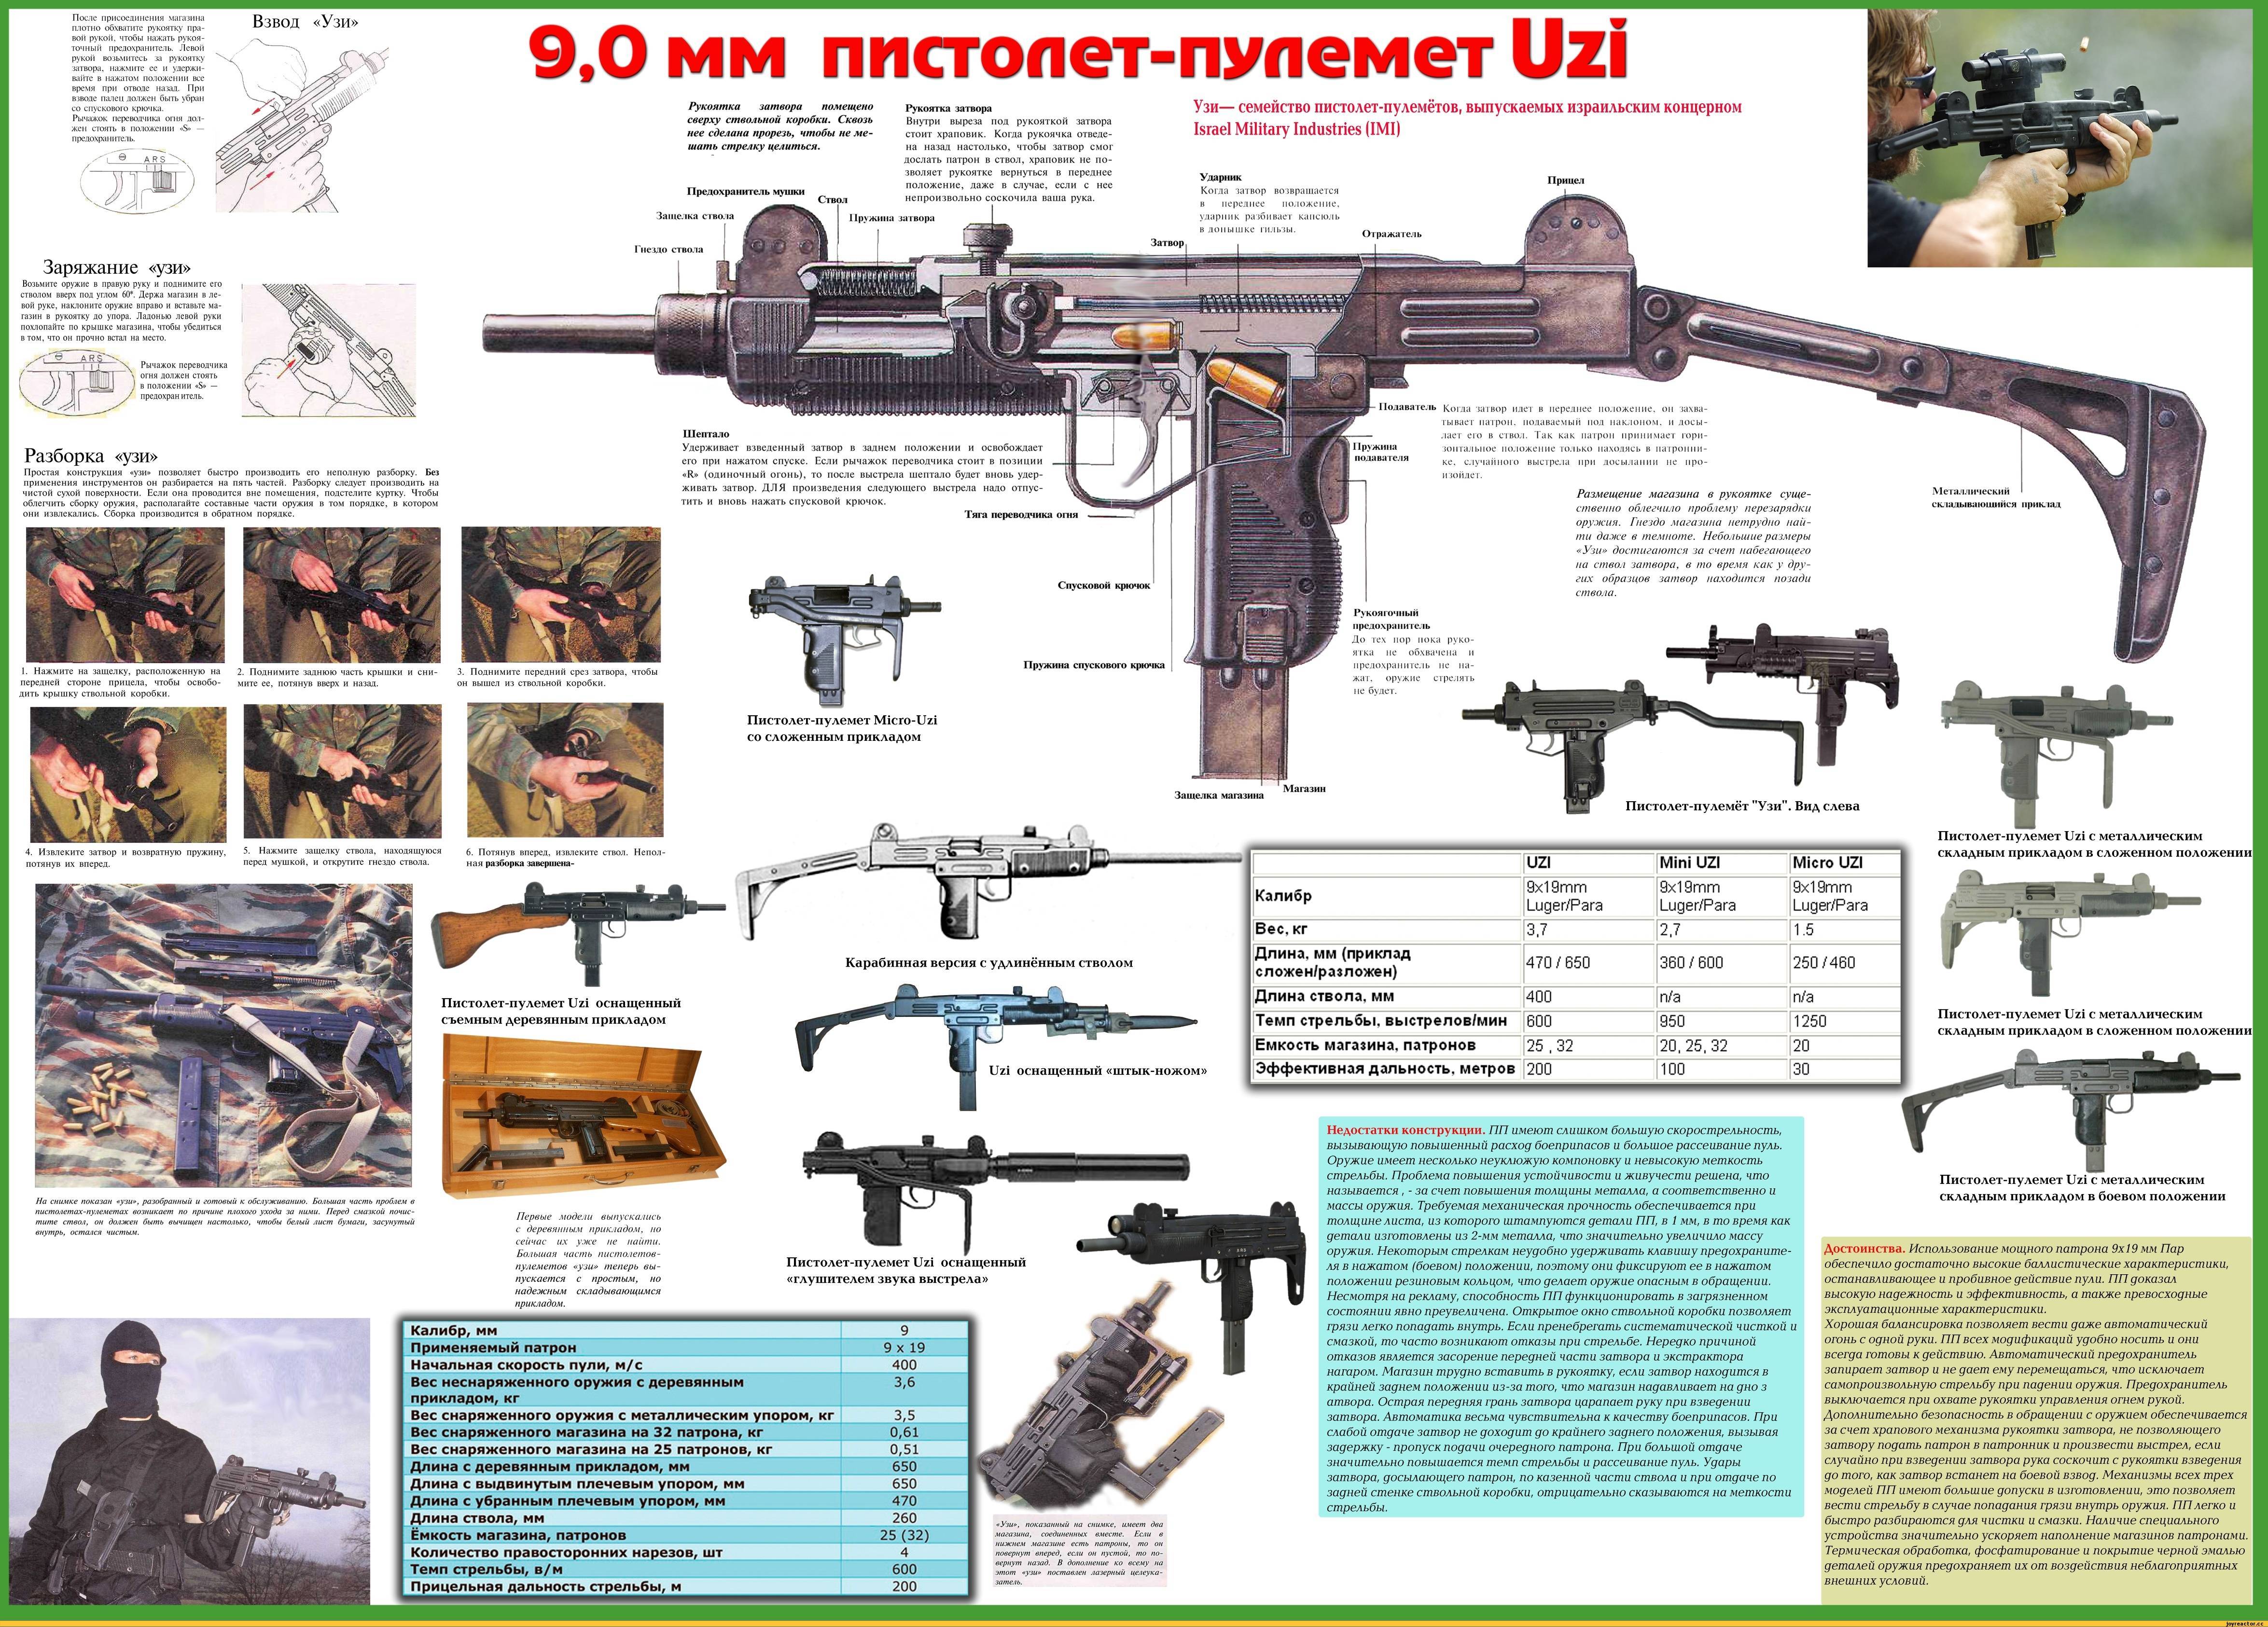 Пистолет-пулемёт узи: модификации uzi, микро, мини, пневматический, тактико-технические характеристики (ттх)